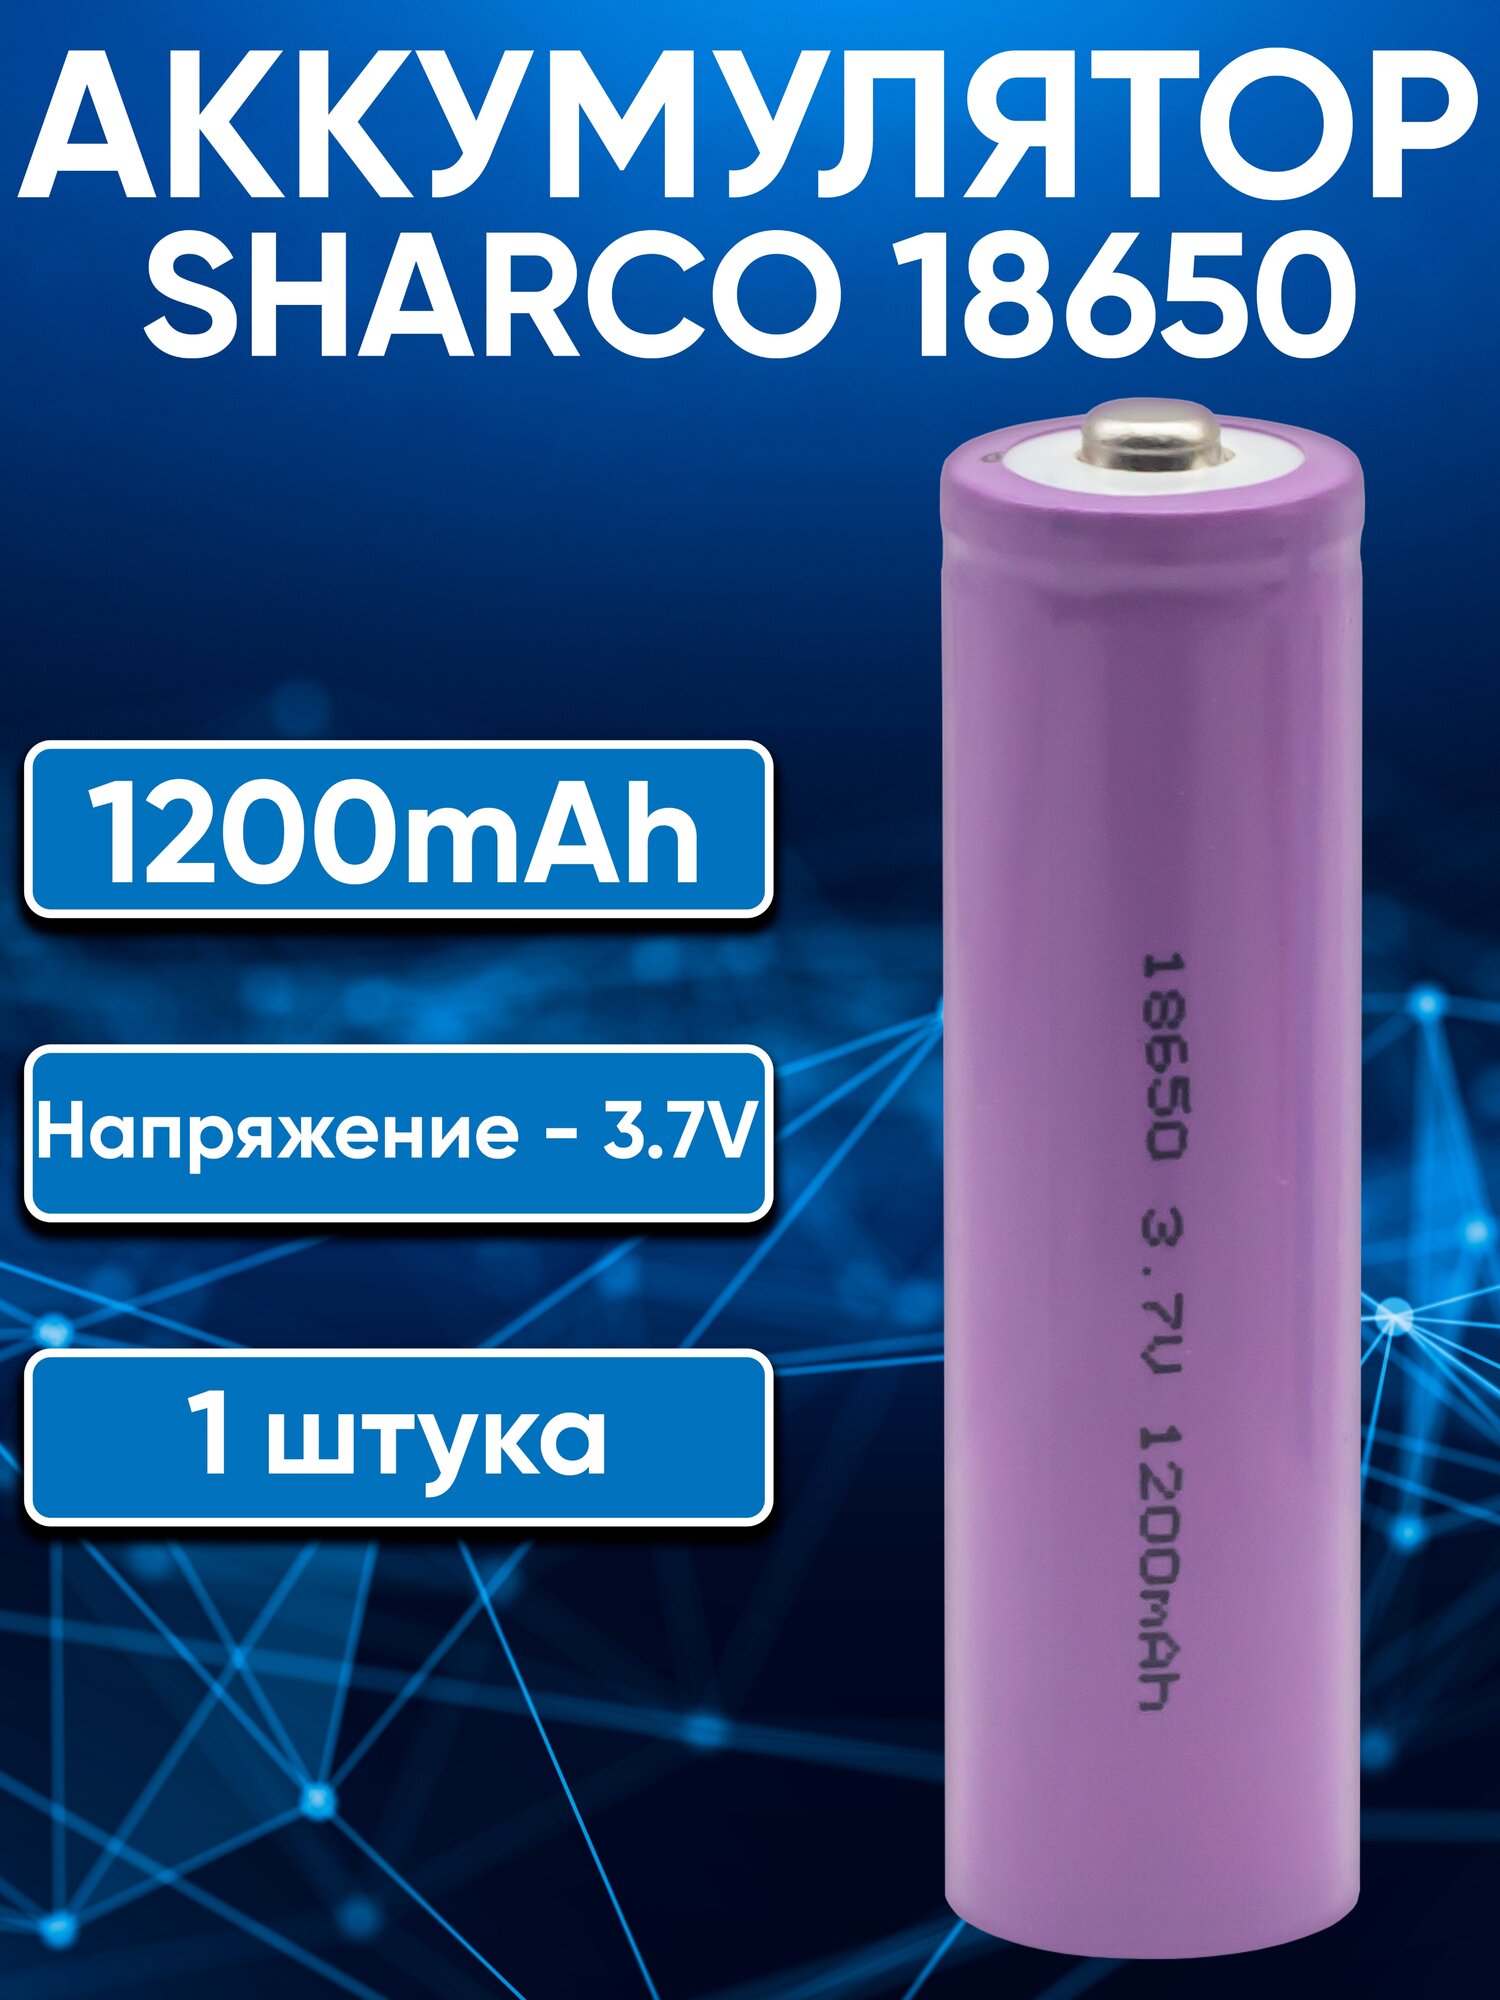 Аккумуляторы 18650 SHARCO 1200mAh